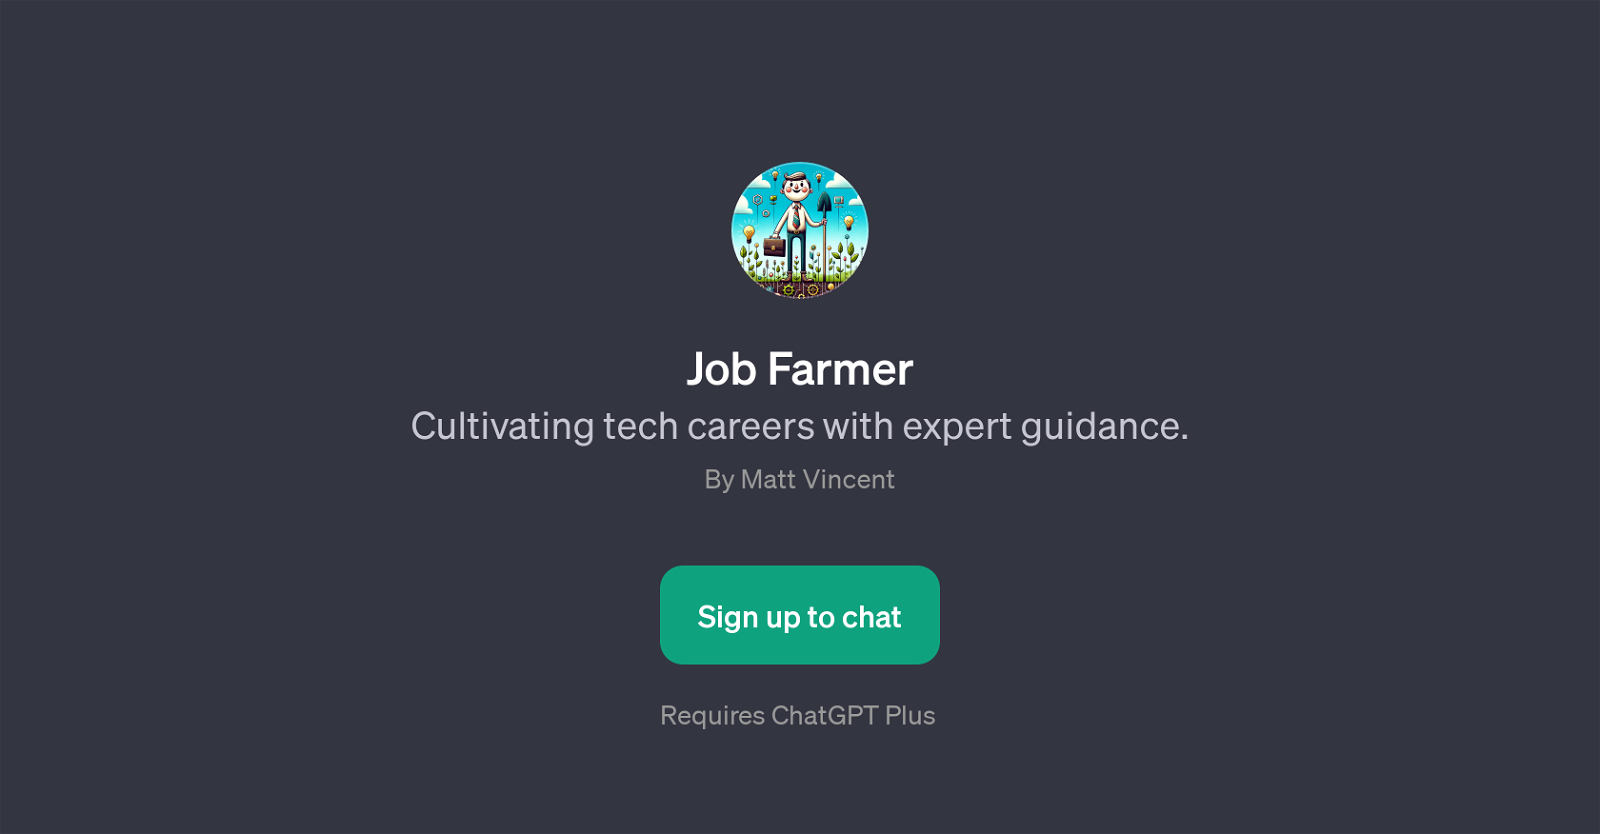 Job Farmer website